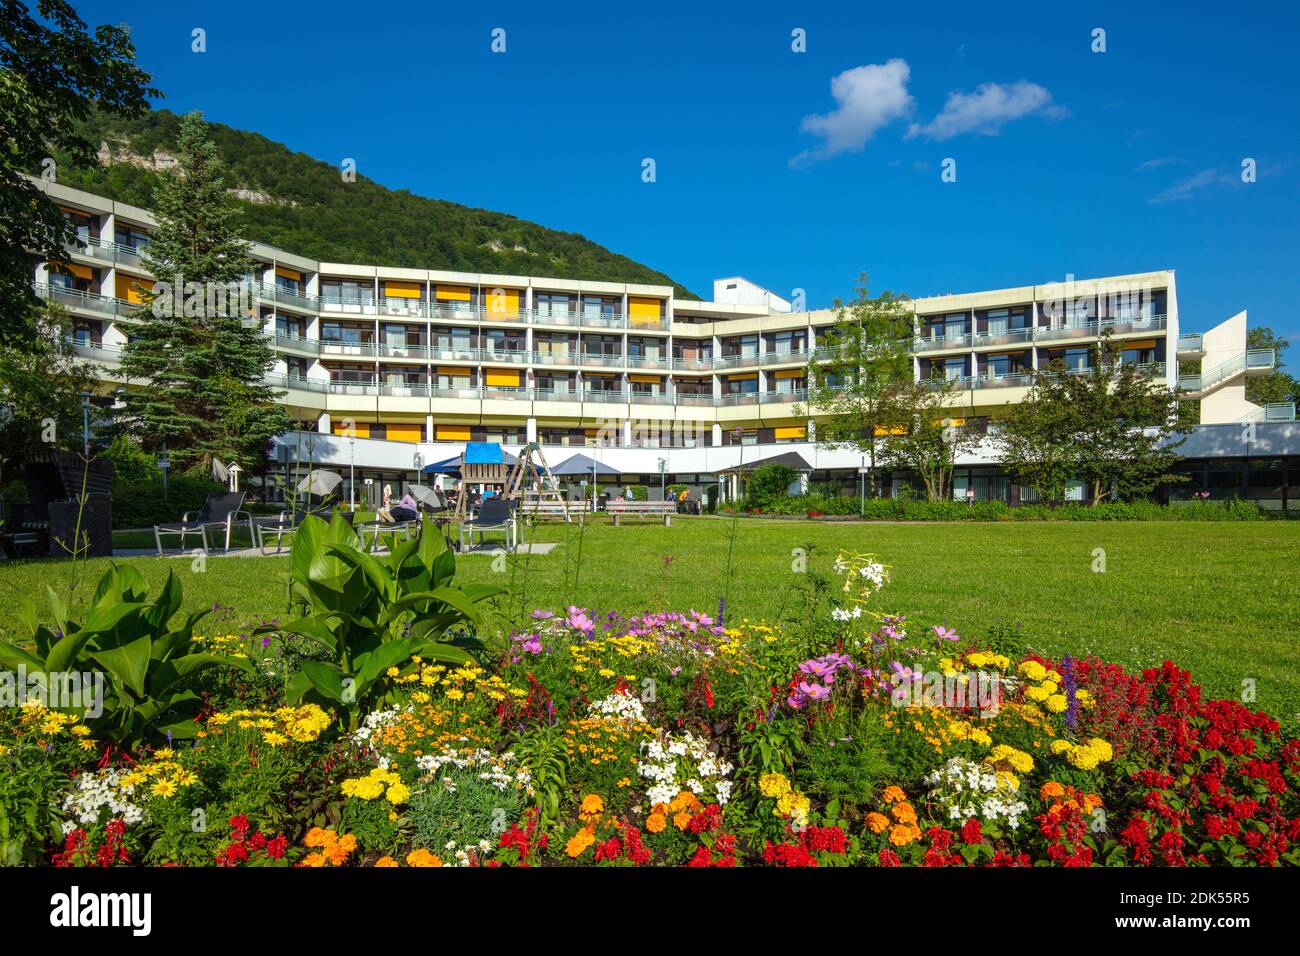 Allemagne, Bade-Wurtemberg, ville de Bad Urach, jardins de spa, cliniques spécialisées Hohenurach Banque D'Images